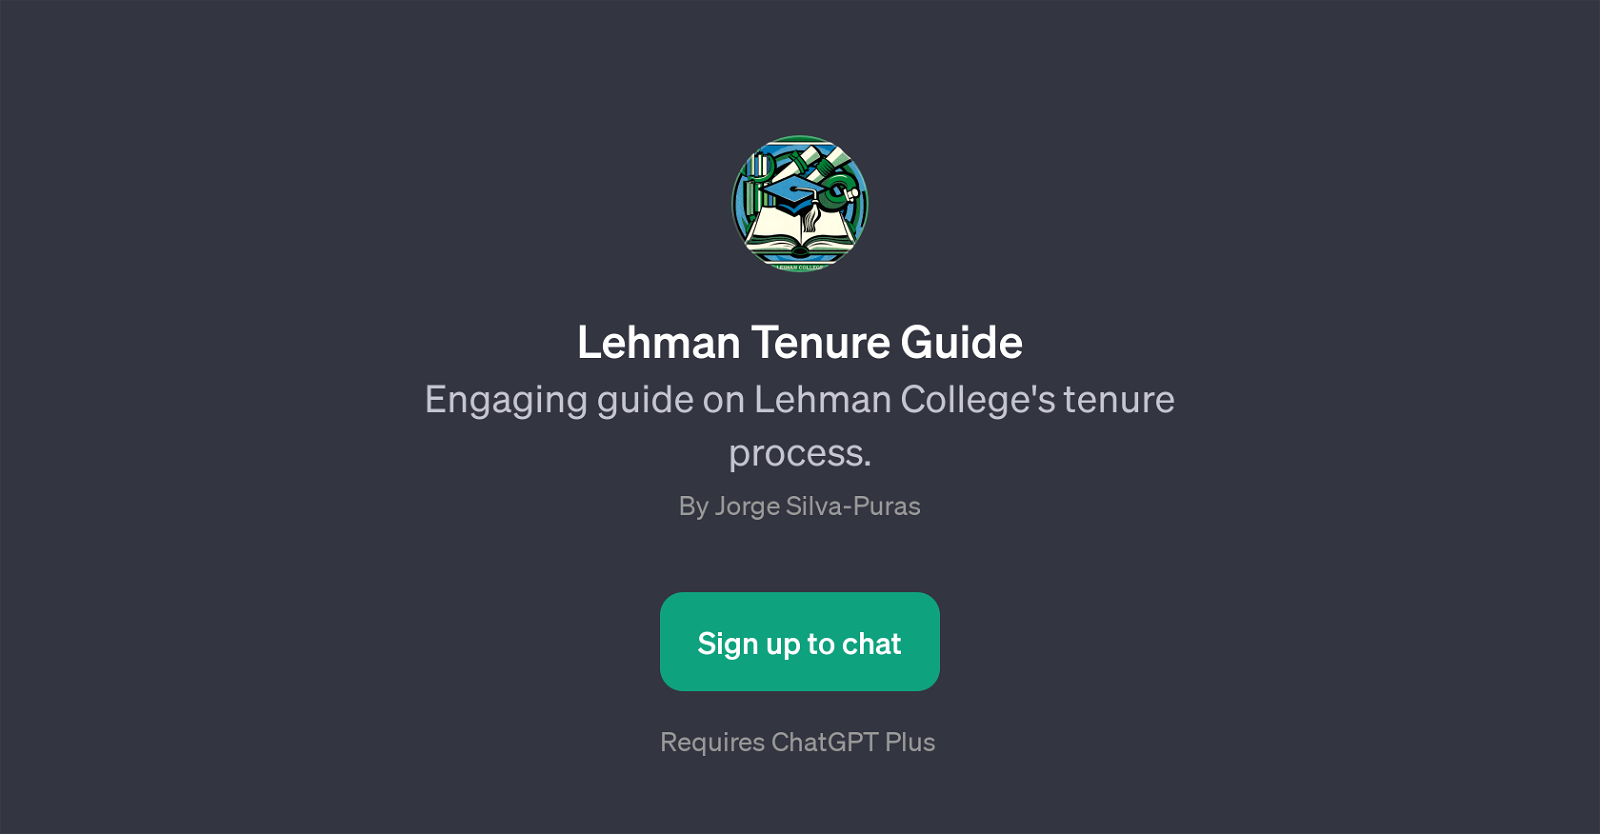 Lehman Tenure Guide website